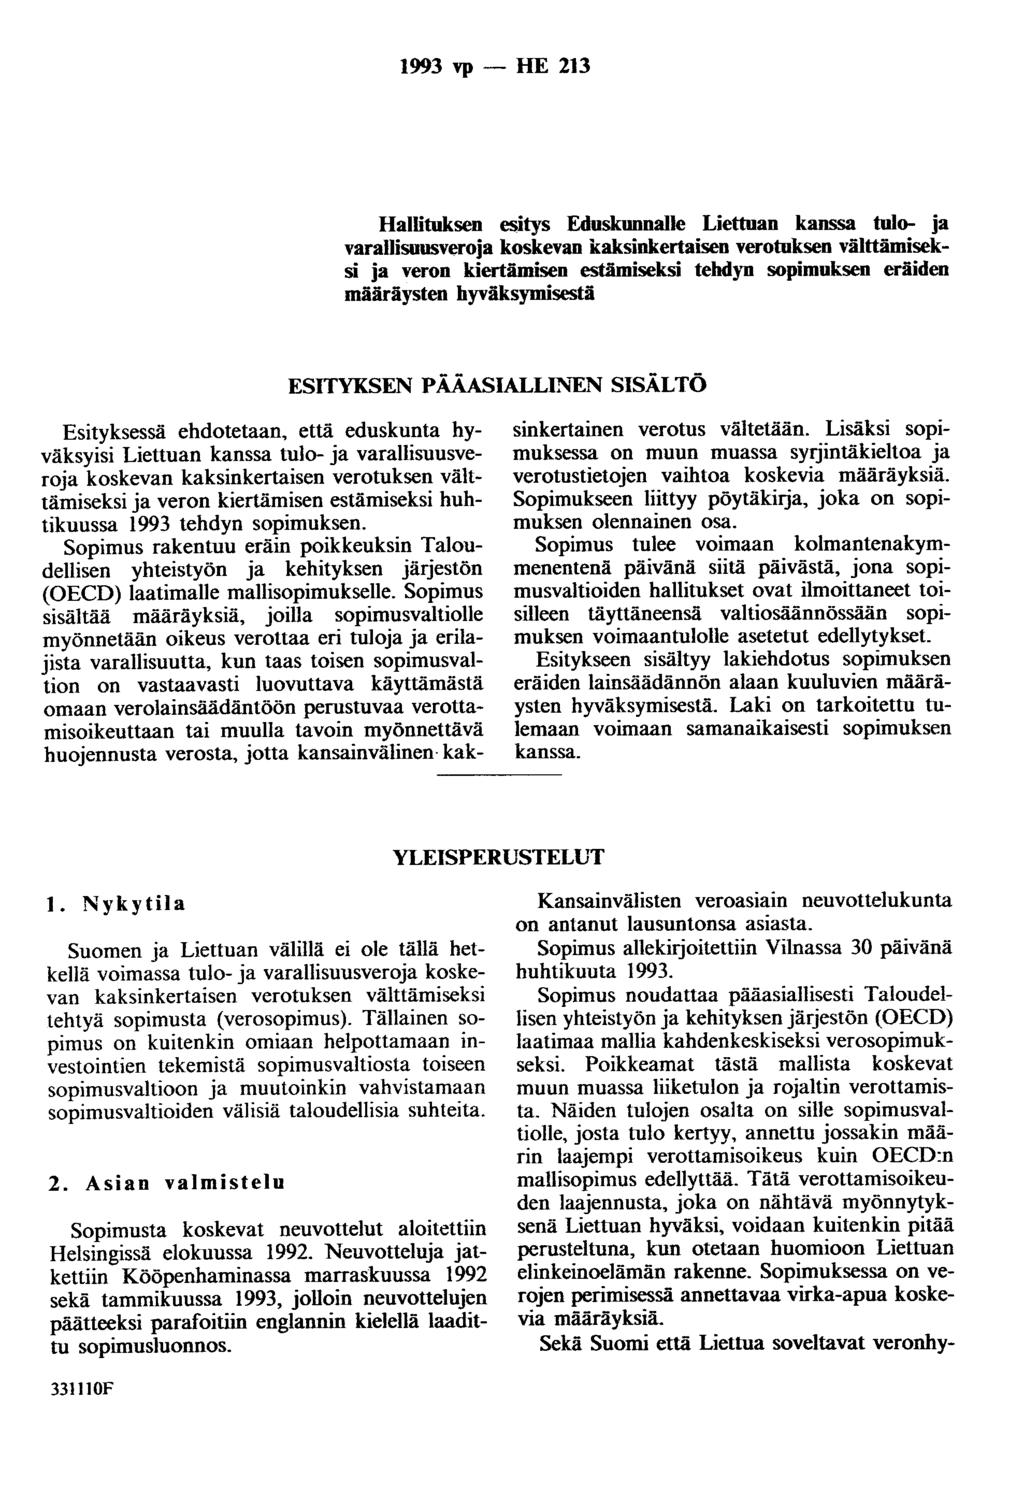 1993 vp - HE 213 Hallituksen esitys Eduskunnalle Liettuan kanssa tulo- ja varallisuusveroja koskevan kaksinkertaisen verotuksen välttämiseksi ja veron kiertämisen estämiseksi tehdyn sopimuksen